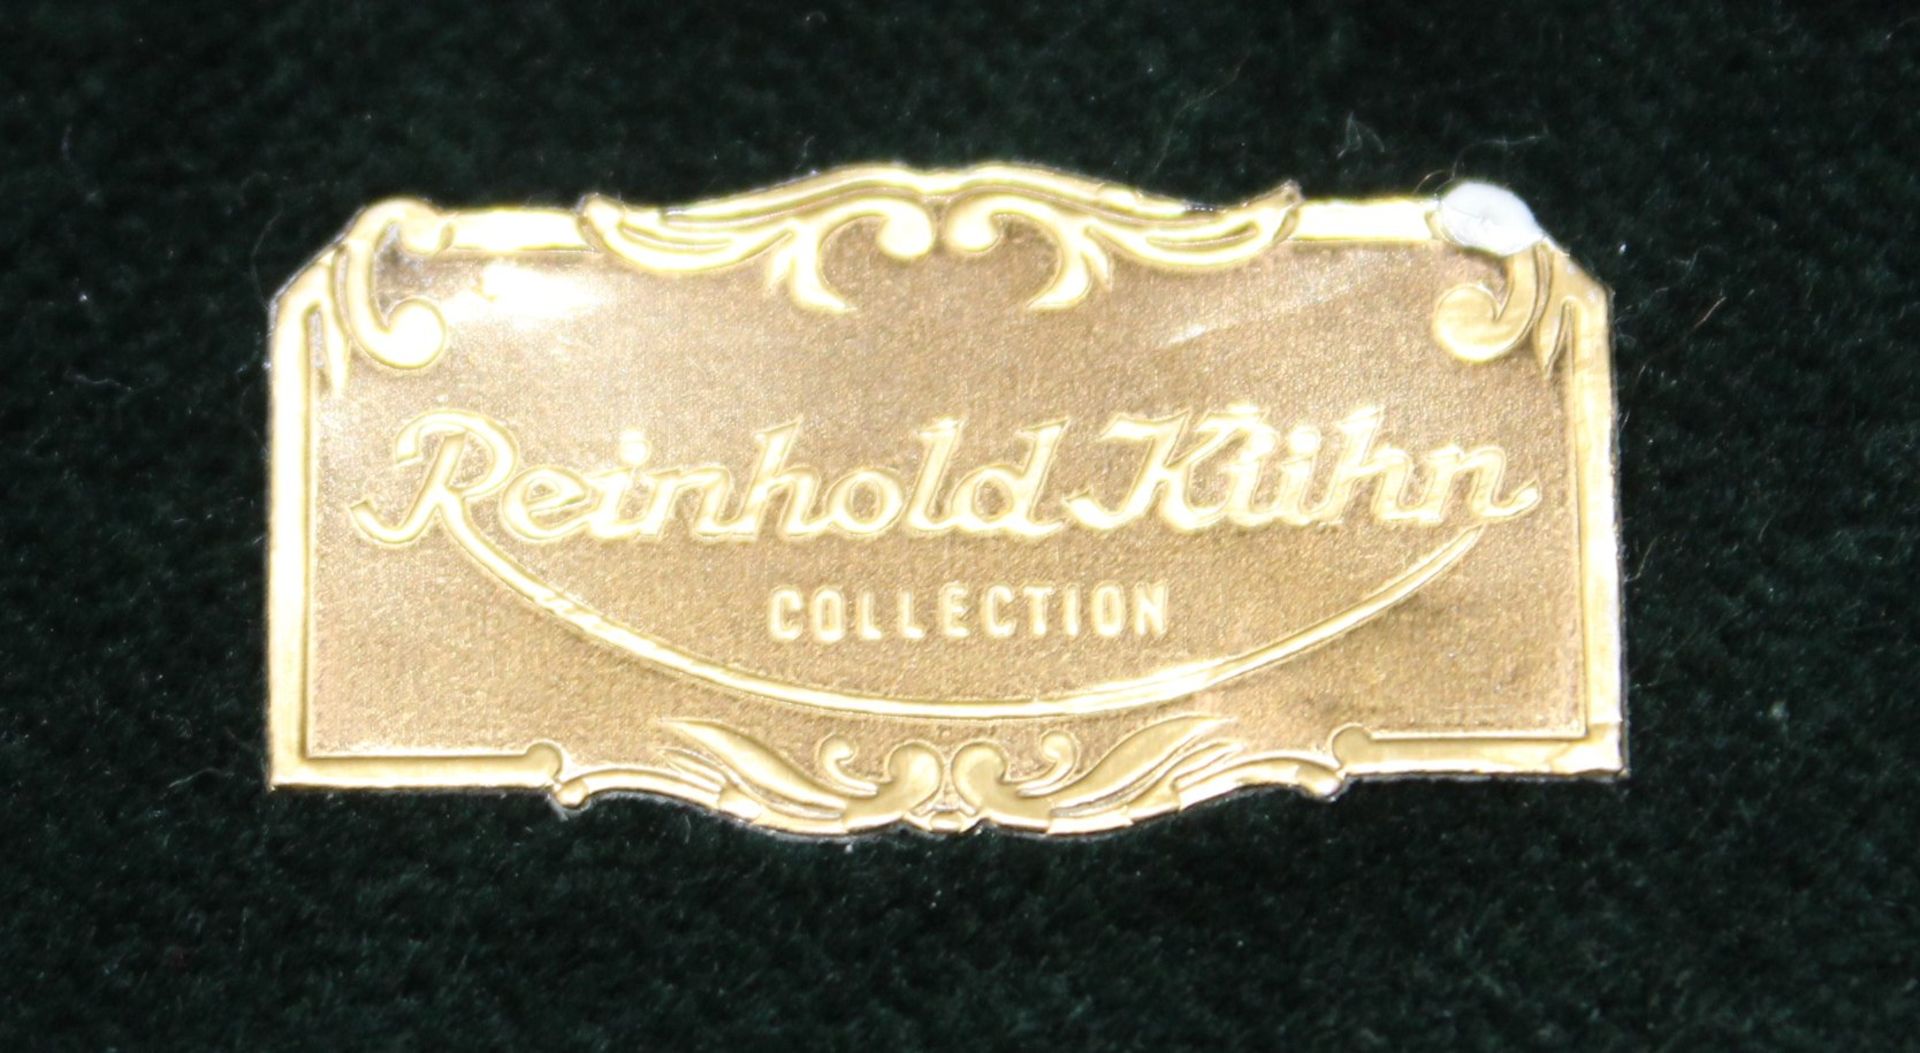 schöne Brillen-Etui, Messing mit geprägtem Leder bezogen, Etikett "Reinhold Kühn", L-16,5cm. - Bild 4 aus 6